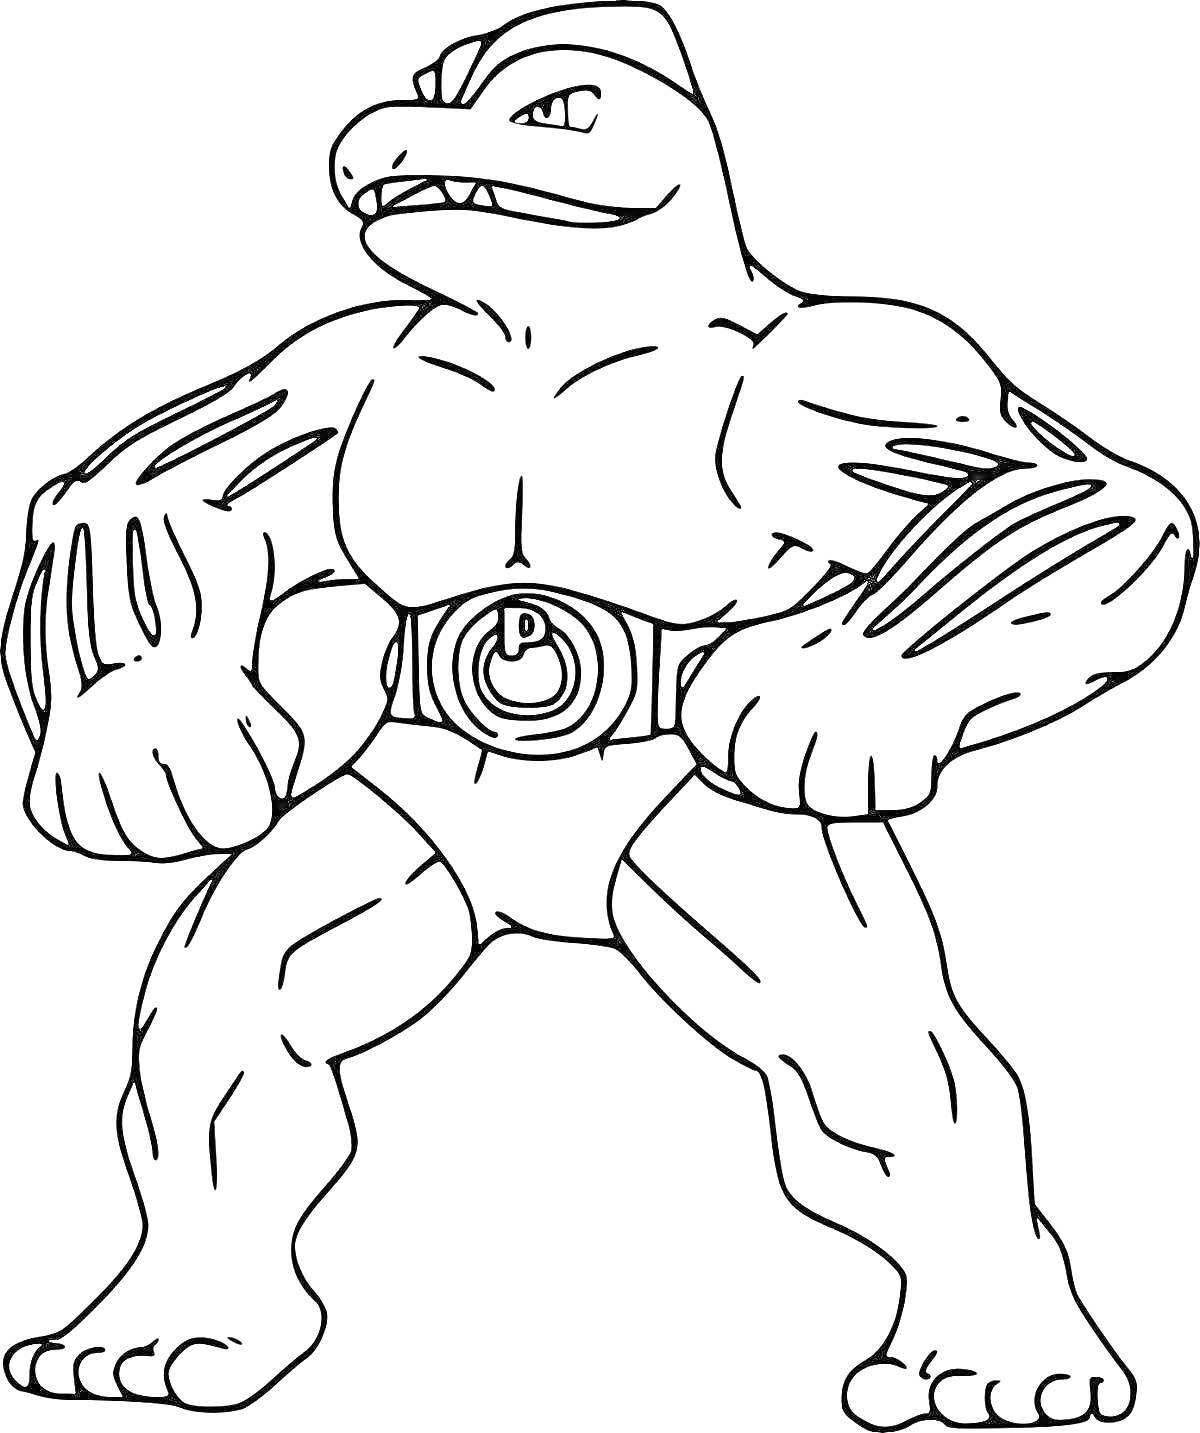 Раскраска Разукраска Гуджитцу с антропоморфным мускулистым существом с чешуйчатой кожей и поясом с круглым символом